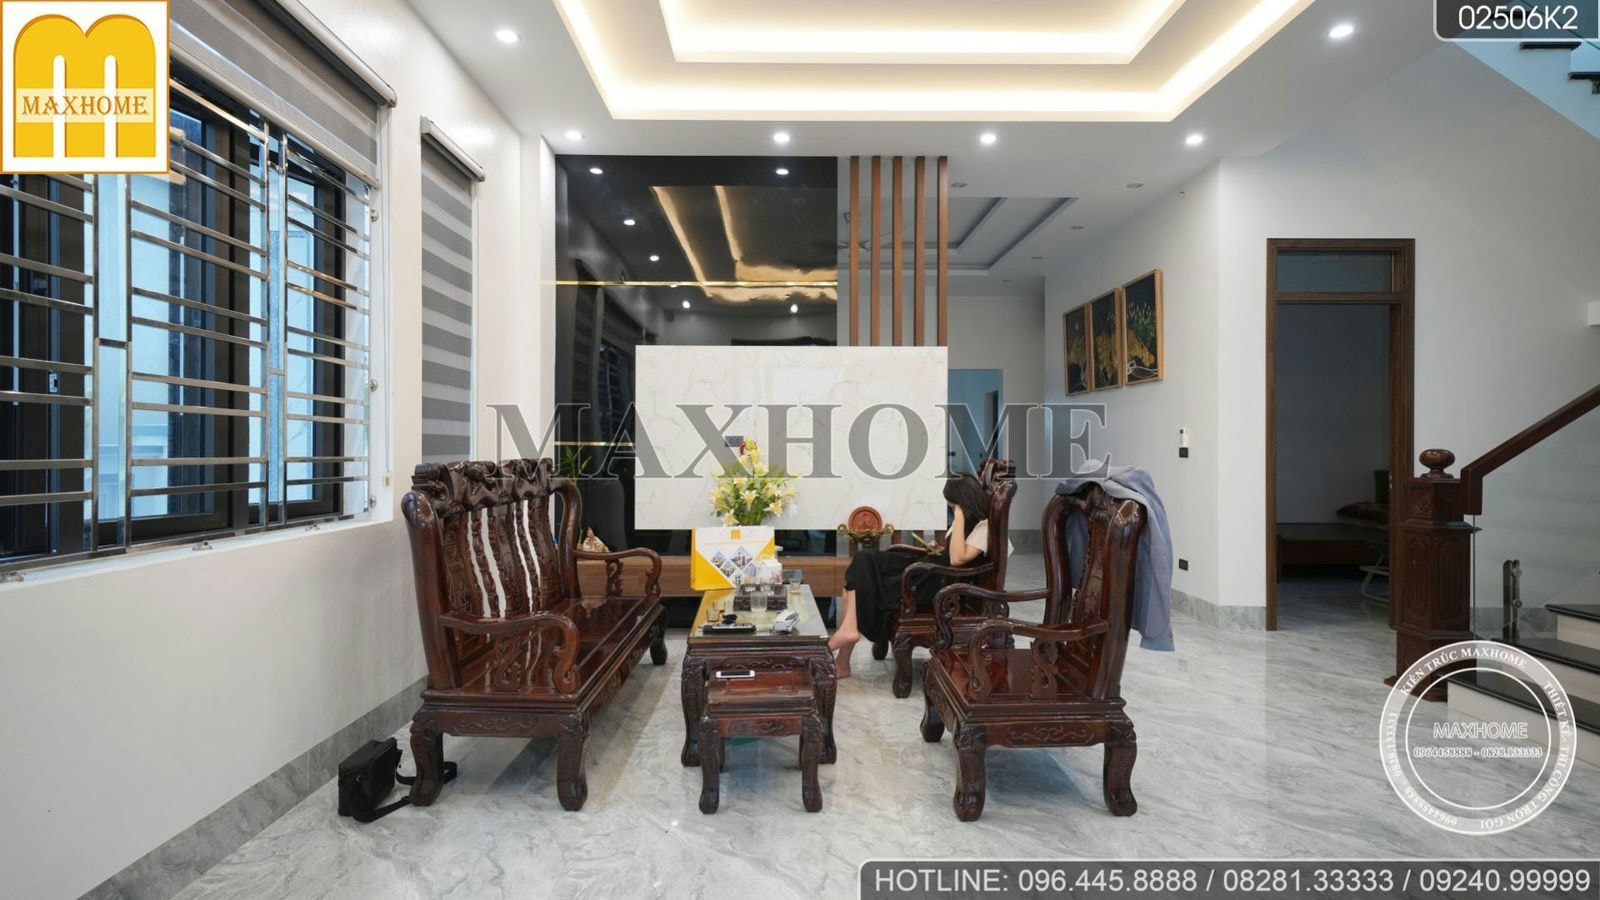 Khám phá bộ nội thất hiện đại, tiện nghi cực đẹp ở Nam Định